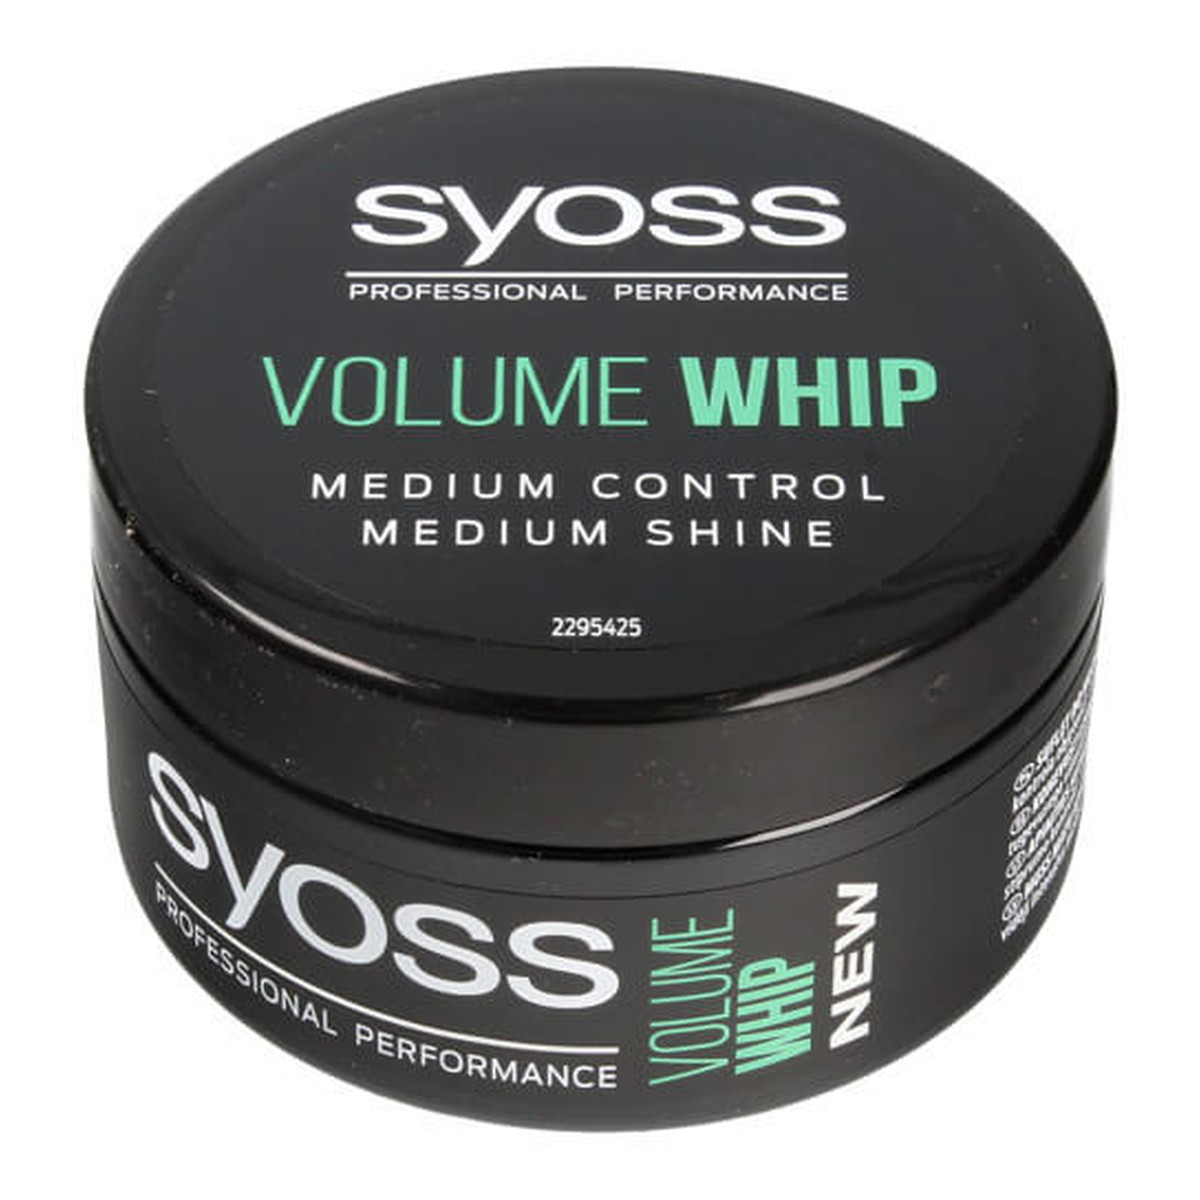 Syoss Volume Whip Suflet do włosów nadający objętość 100ml